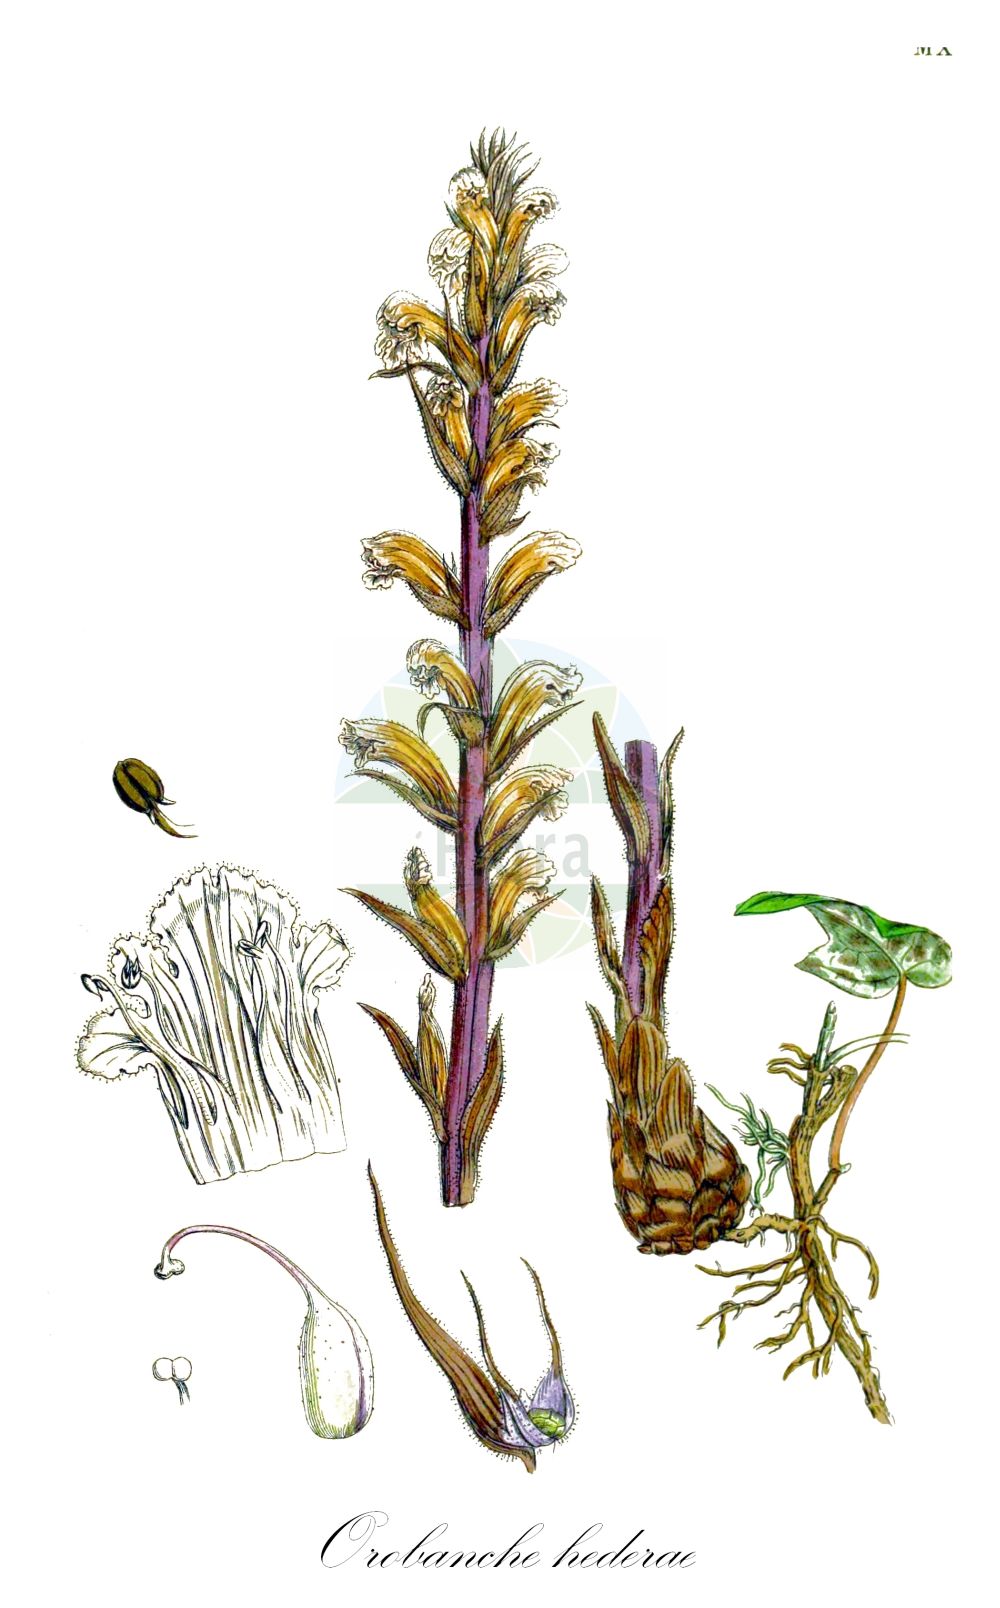 Historische Abbildung von Orobanche hederae (Efeu-Sommerwurz - Ivy Broomrape). Das Bild zeigt Blatt, Bluete, Frucht und Same. ---- Historical Drawing of Orobanche hederae (Efeu-Sommerwurz - Ivy Broomrape). The image is showing leaf, flower, fruit and seed.(Orobanche hederae,Efeu-Sommerwurz,Ivy Broomrape,Orobanche balearica,Orobanche glaberrima,Orobanche hederae,Orobanche laurina,Orobanche yuccae,Efeu-Sommerwurz,Ivy Broomrape,Orobanche,Sommerwurz,Broomrape,Orobanchaceae,Sommerwurzgewächse,Broomrape family,Blatt,Bluete,Frucht,Same,leaf,flower,fruit,seed,Sowerby (1790-1813))